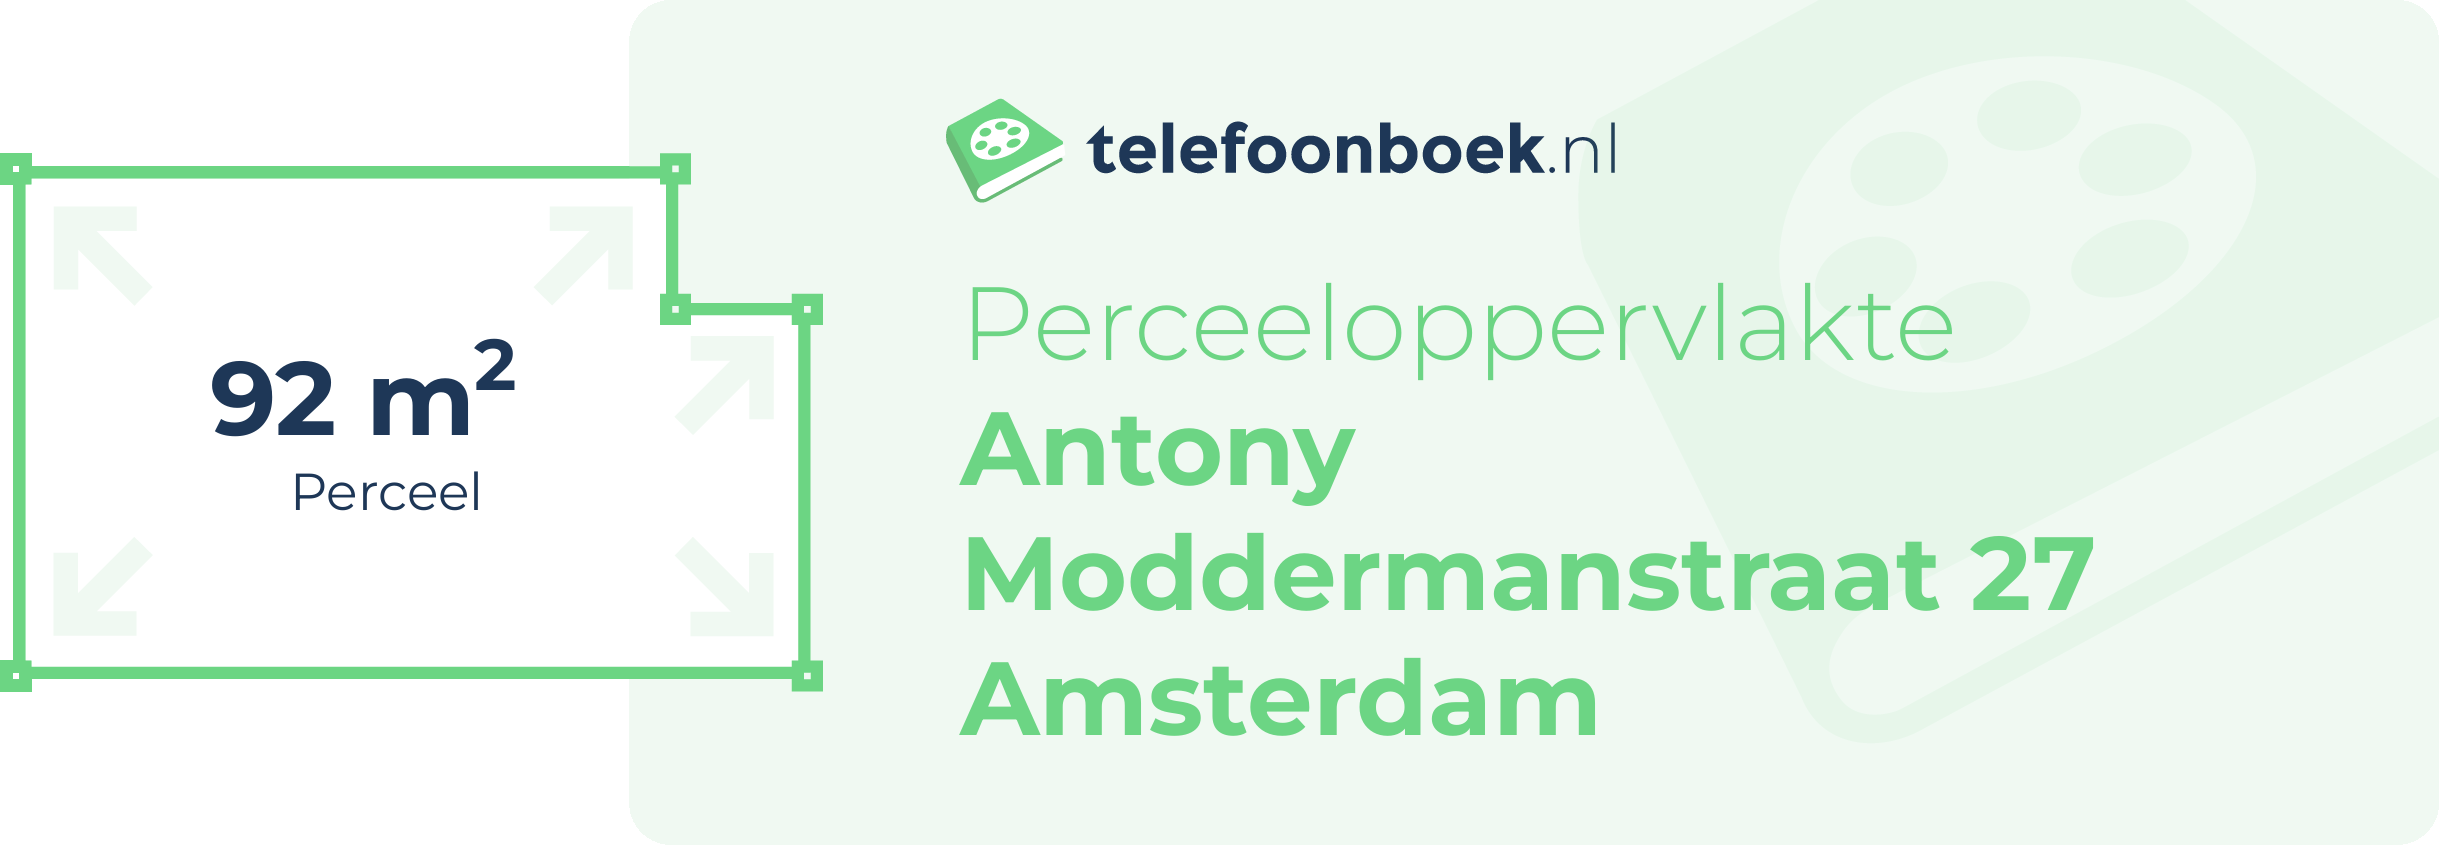 Perceeloppervlakte Antony Moddermanstraat 27 Amsterdam